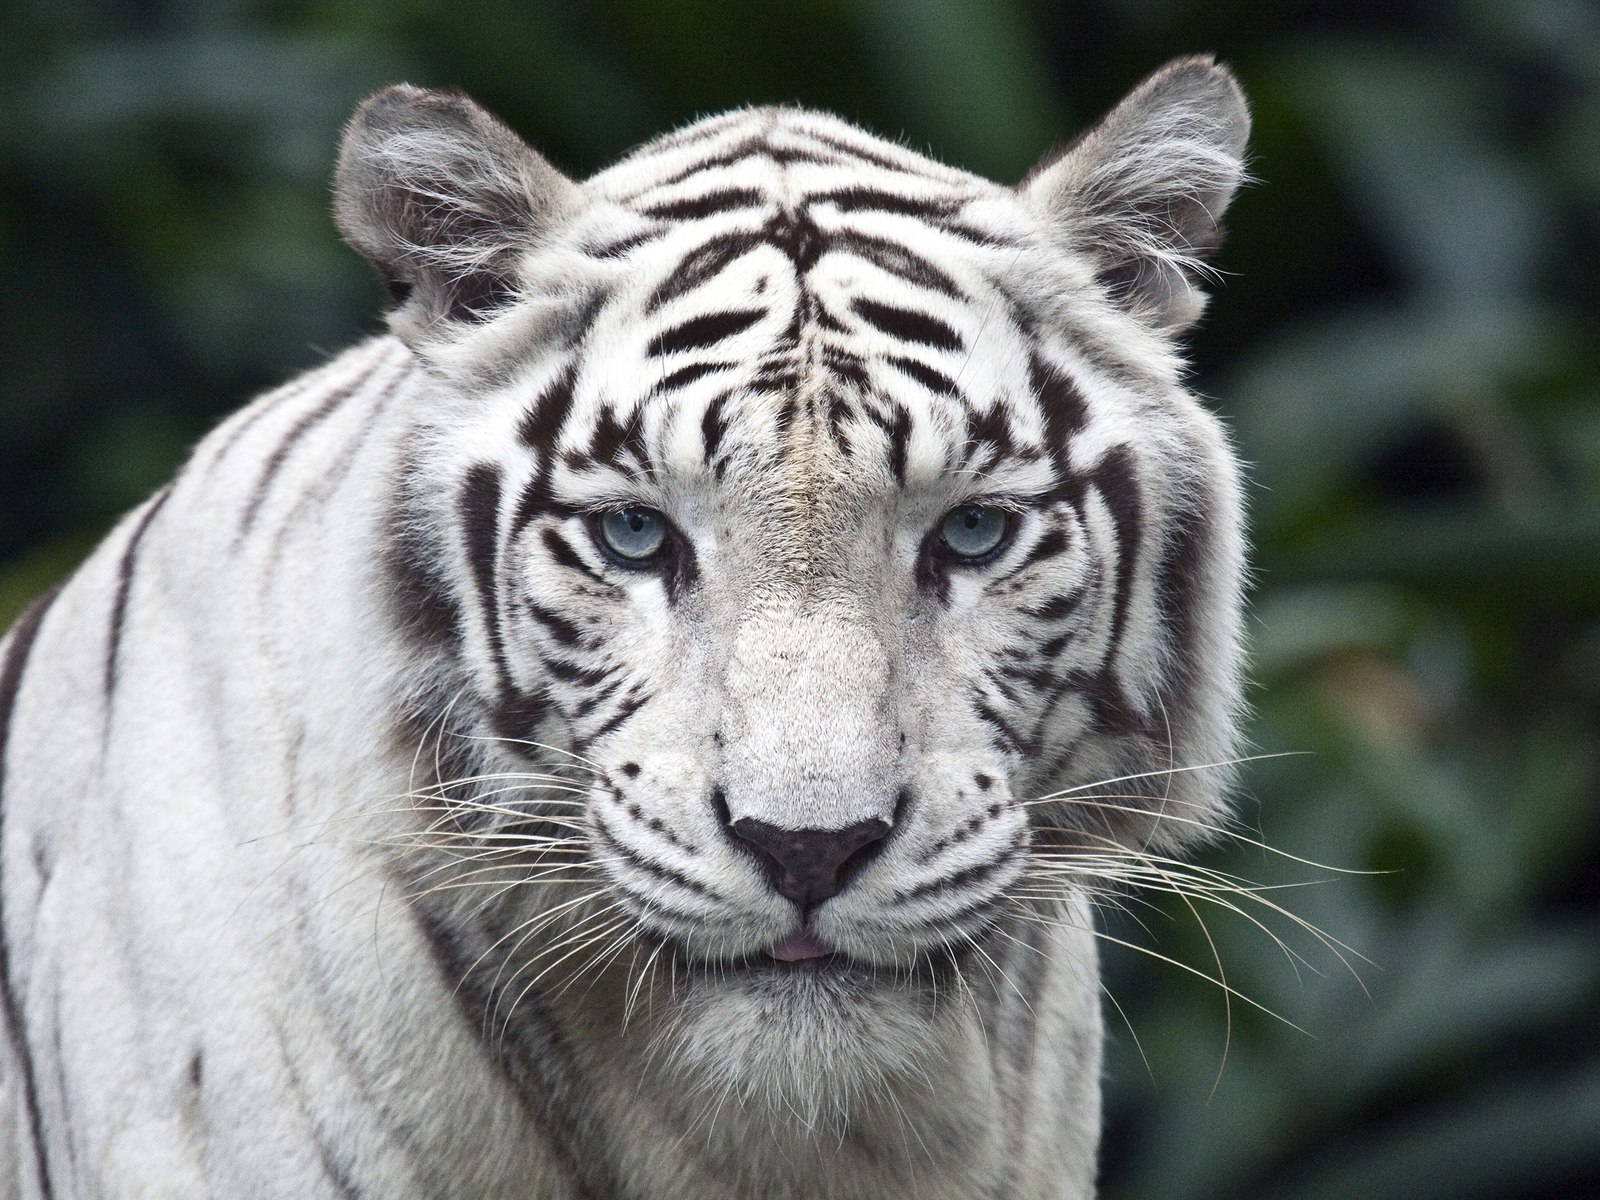 Картинка: Кошка, белый тигр, взгляд, усы, нос